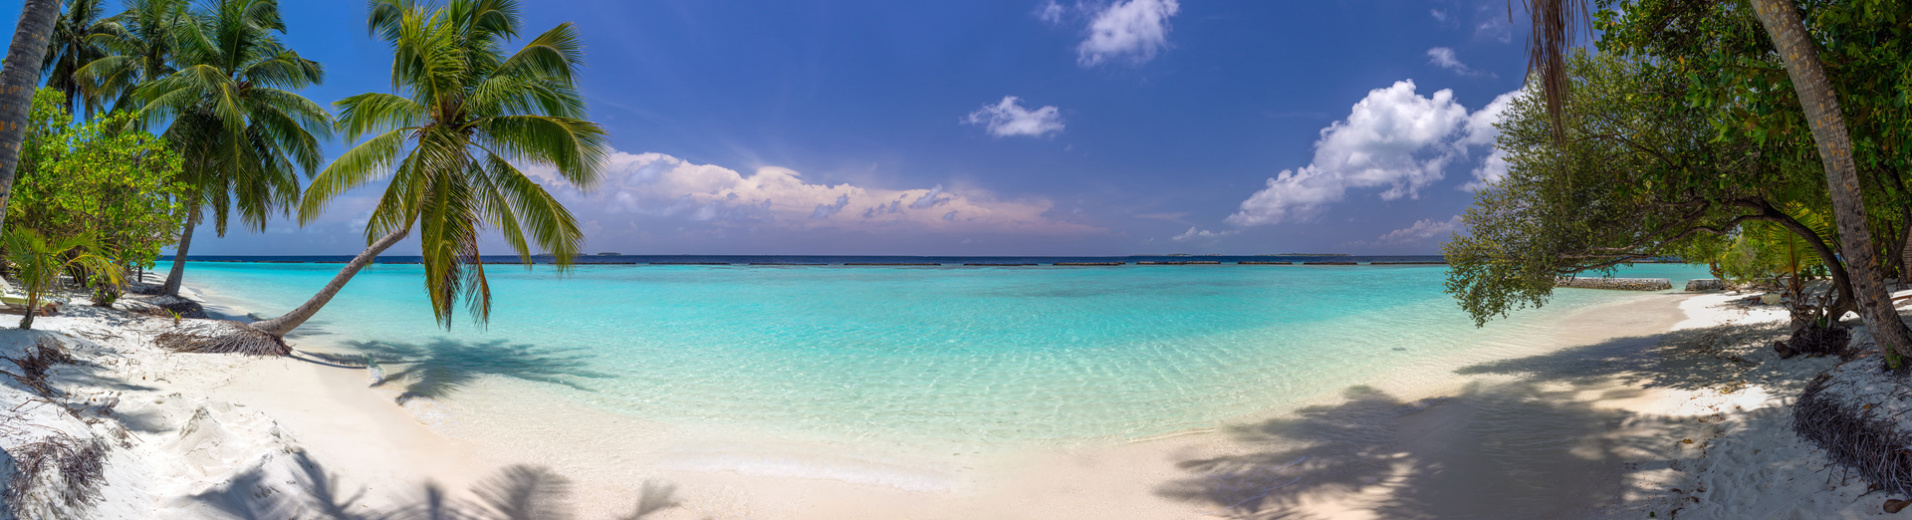 maldives panorama